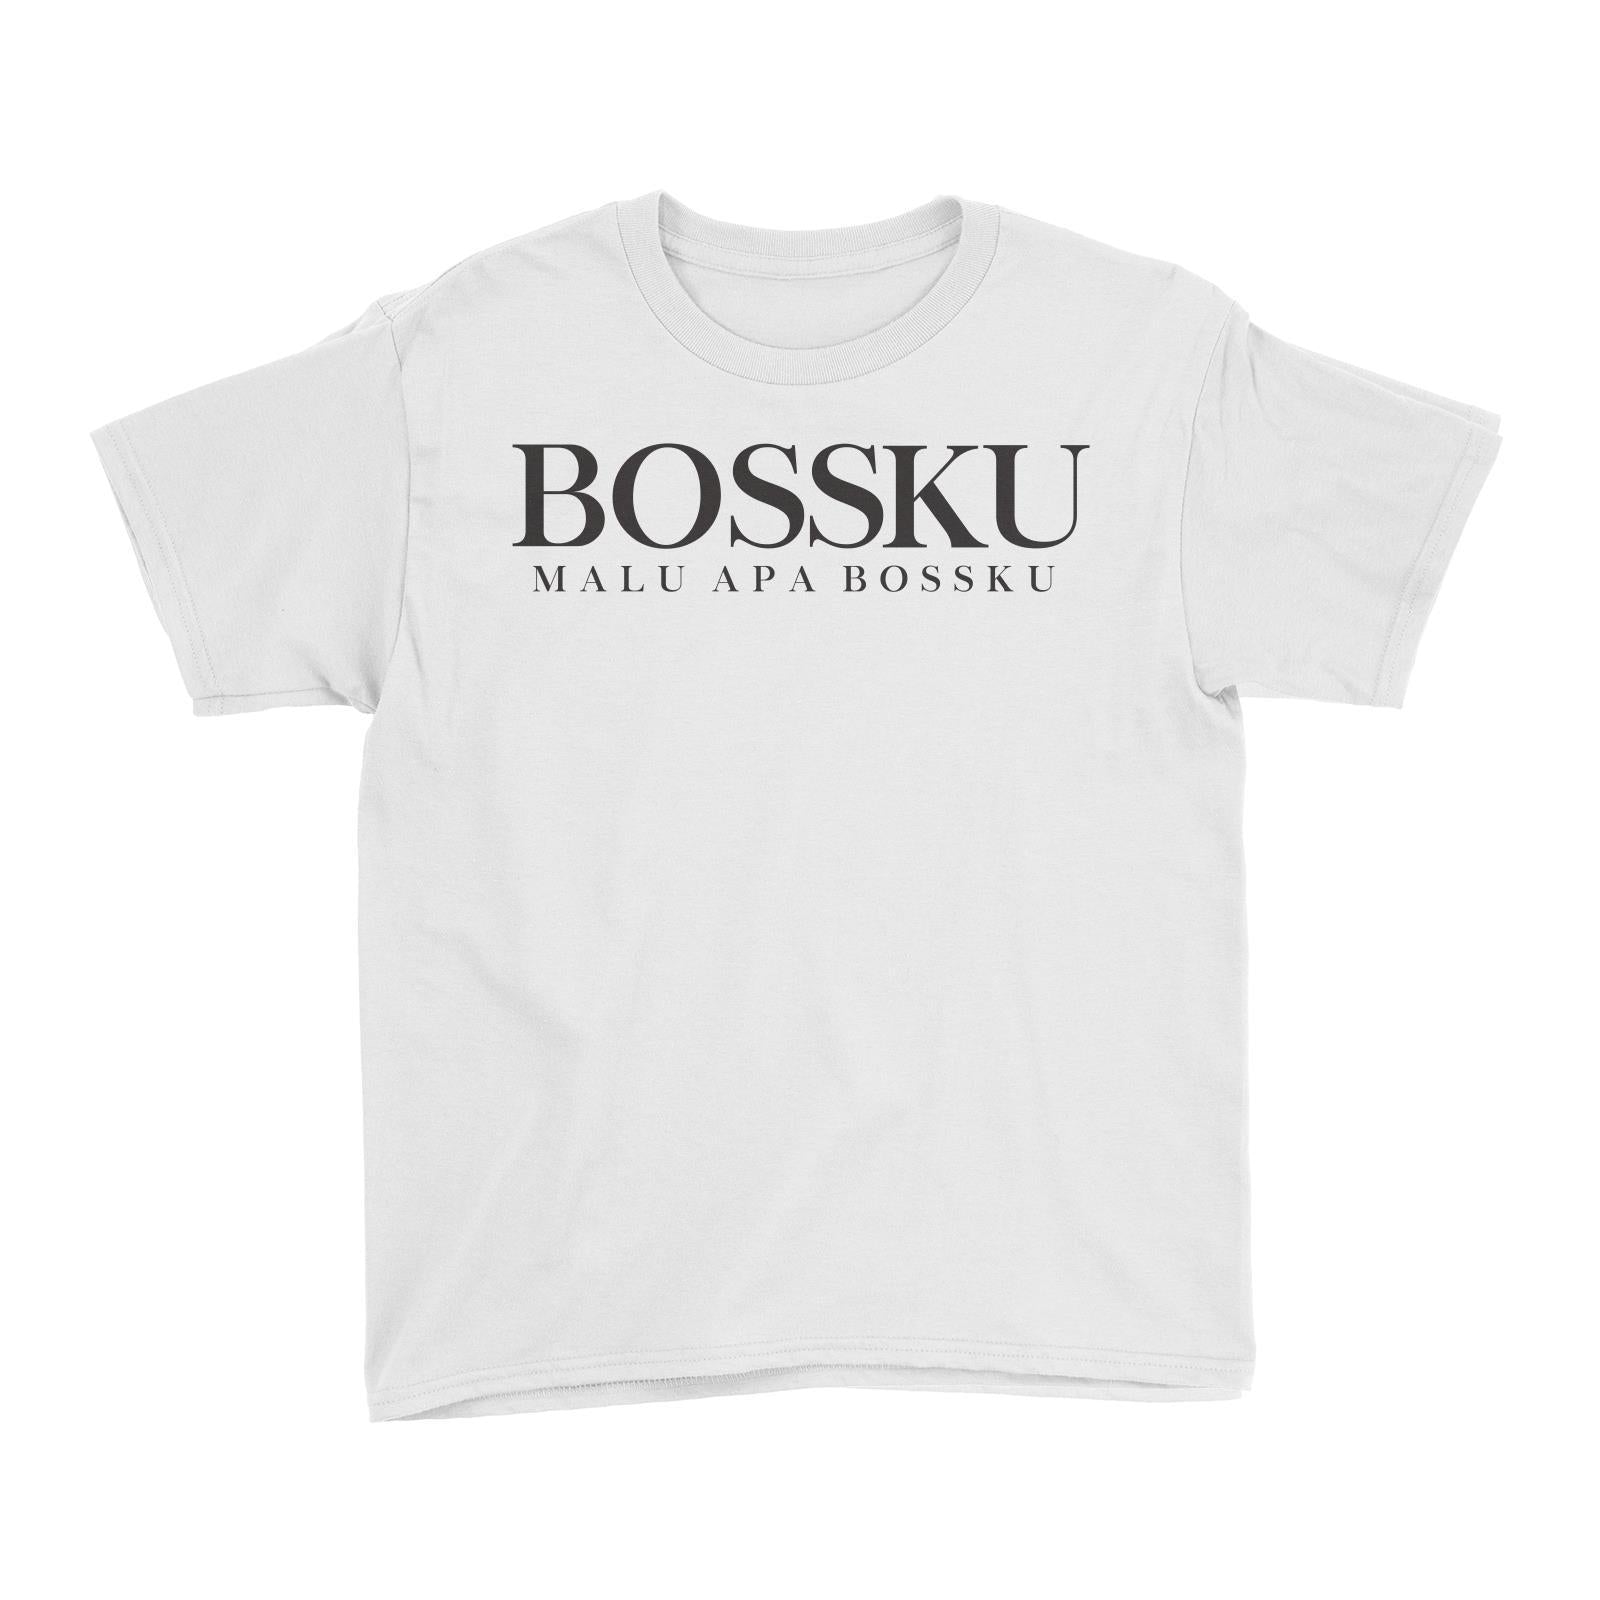 Slang Statement Bossku Malu Apa Bossku Kid's T-Shirt